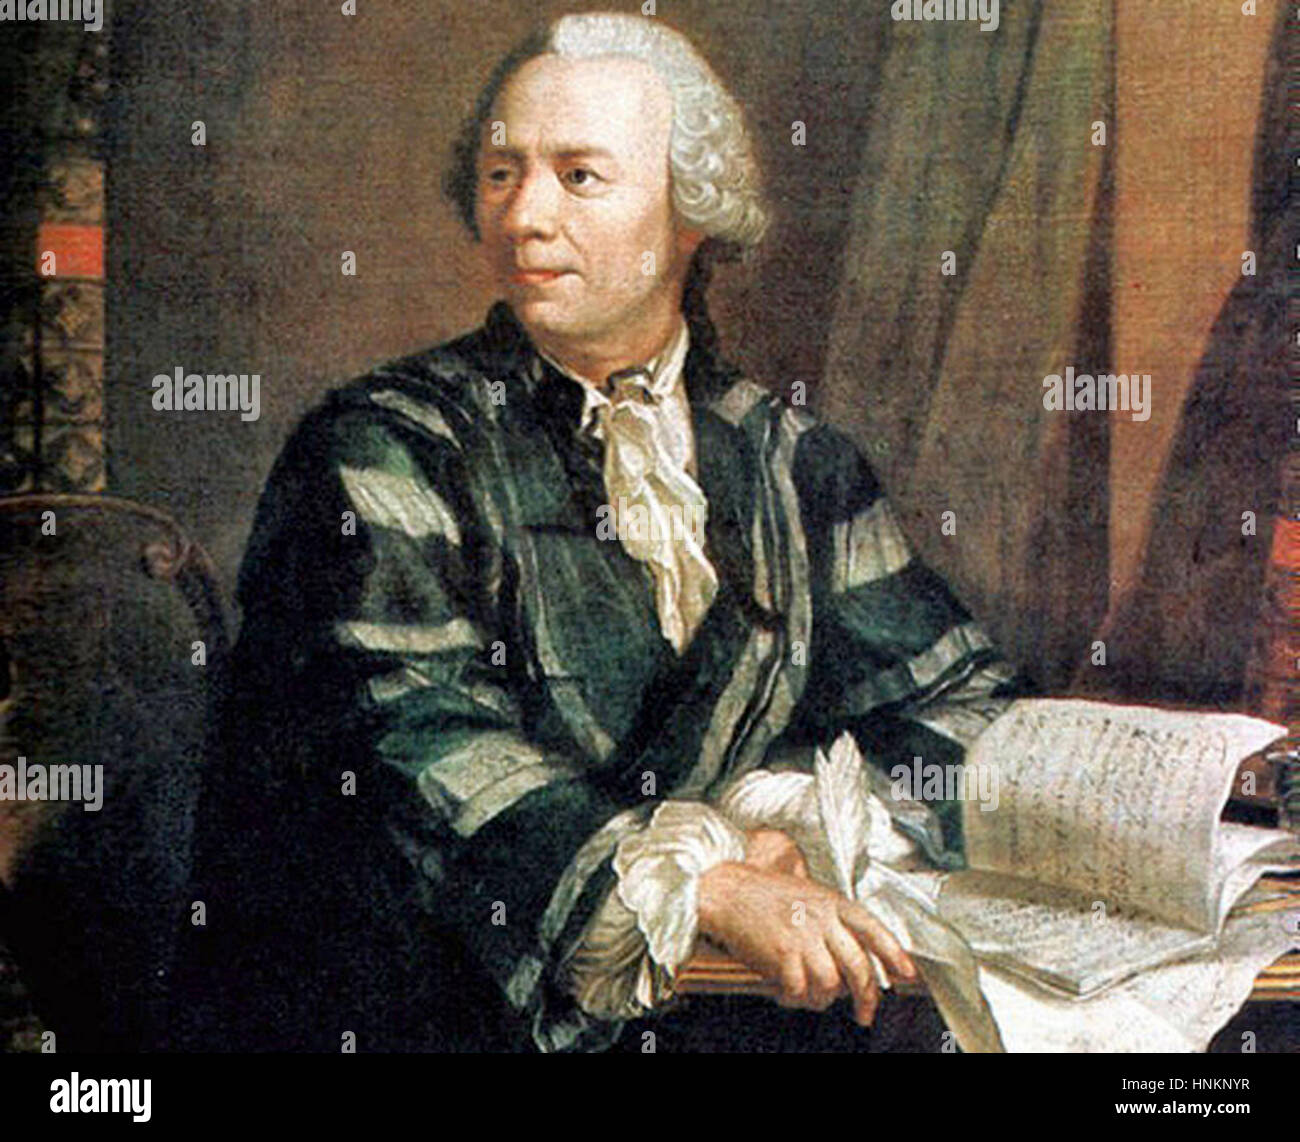 Leonhard Euler, Swiss matematico, fisico e astronomo, logician e ingegnere che ha realizzato importanti e influenti scoperte in molti rami della matematica Foto Stock